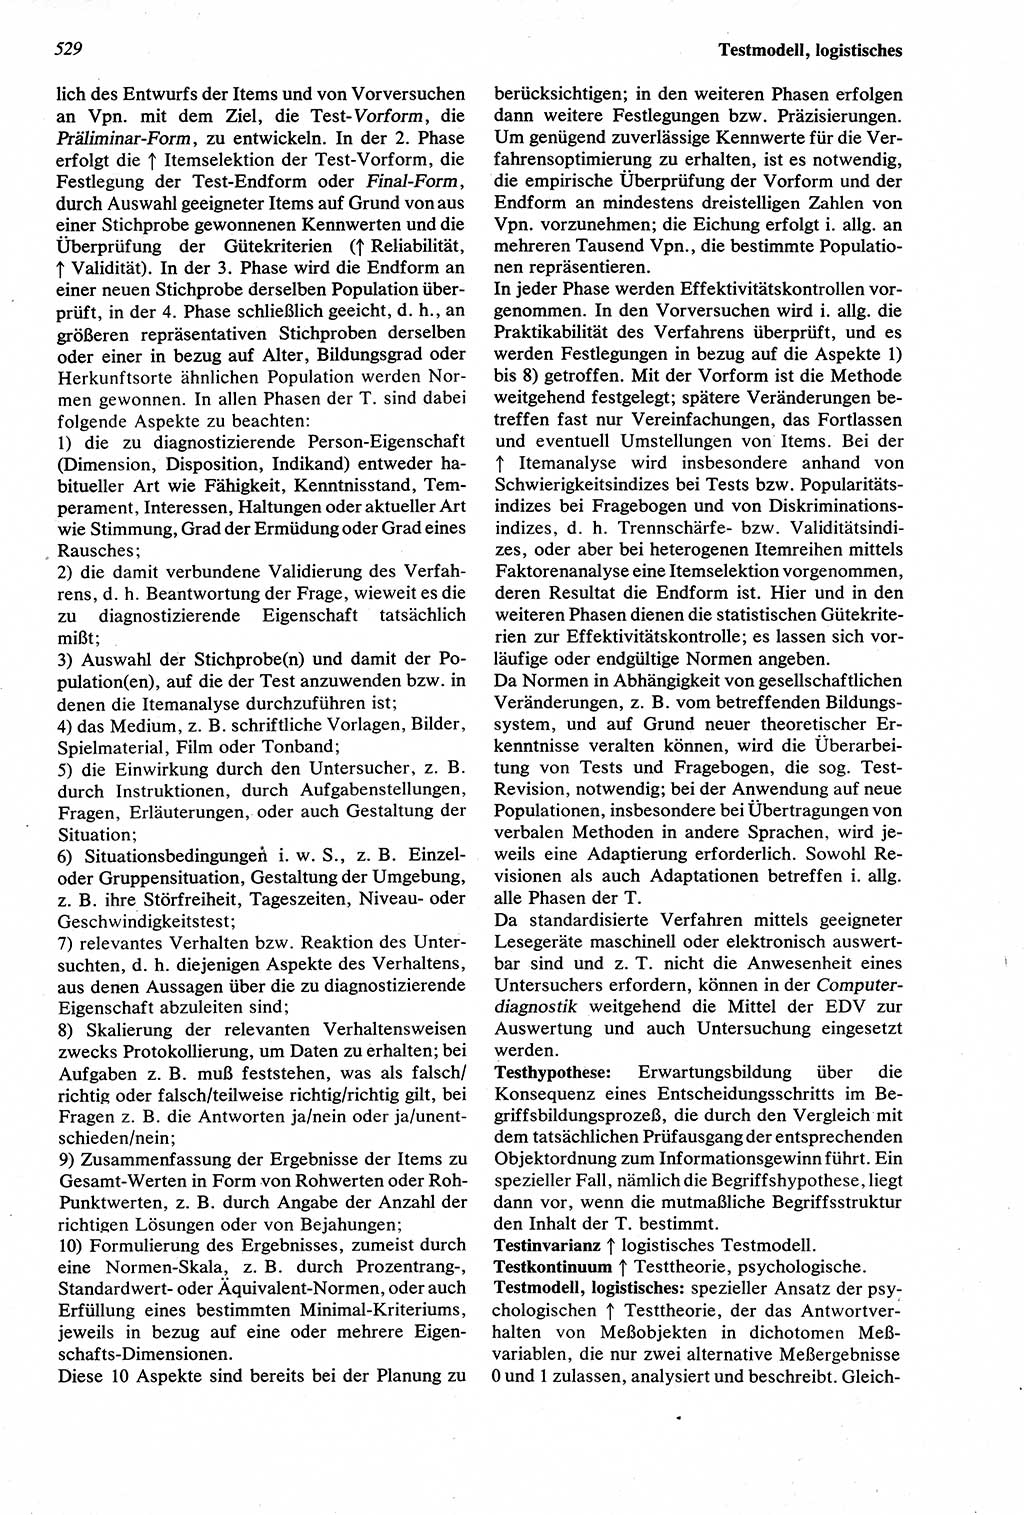 Wörterbuch der Psychologie [Deutsche Demokratische Republik (DDR)] 1976, Seite 529 (Wb. Psych. DDR 1976, S. 529)